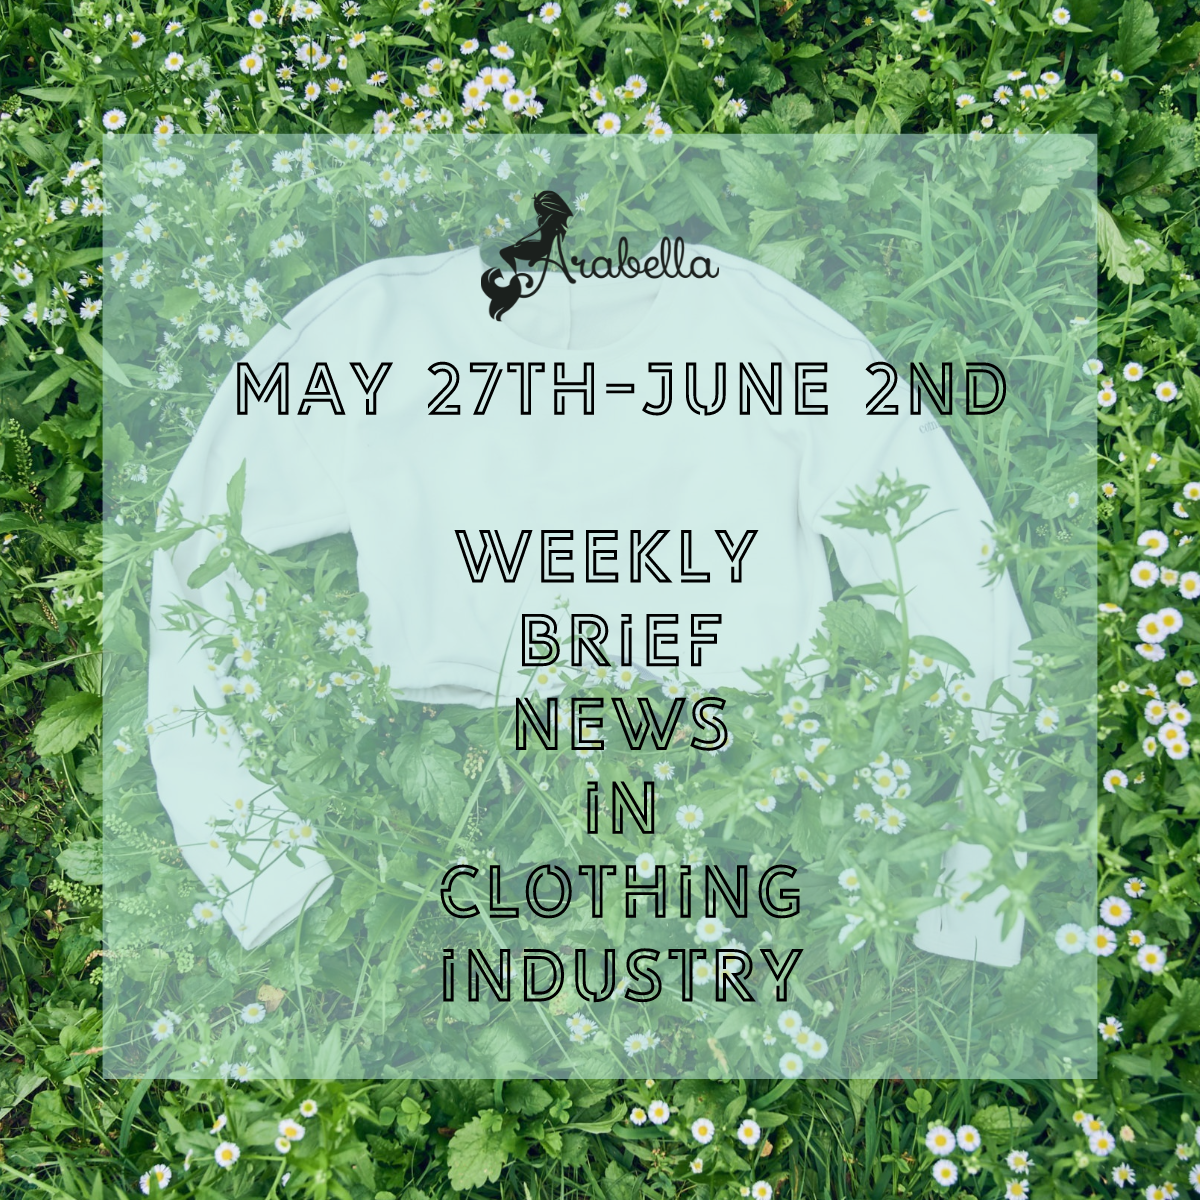 Berita Luar Biasa Untuk Elastane Berbasis Bio!Berita Singkat Mingguan Arabella di Industri Pakaian Selama 27 Mei-2 Juni